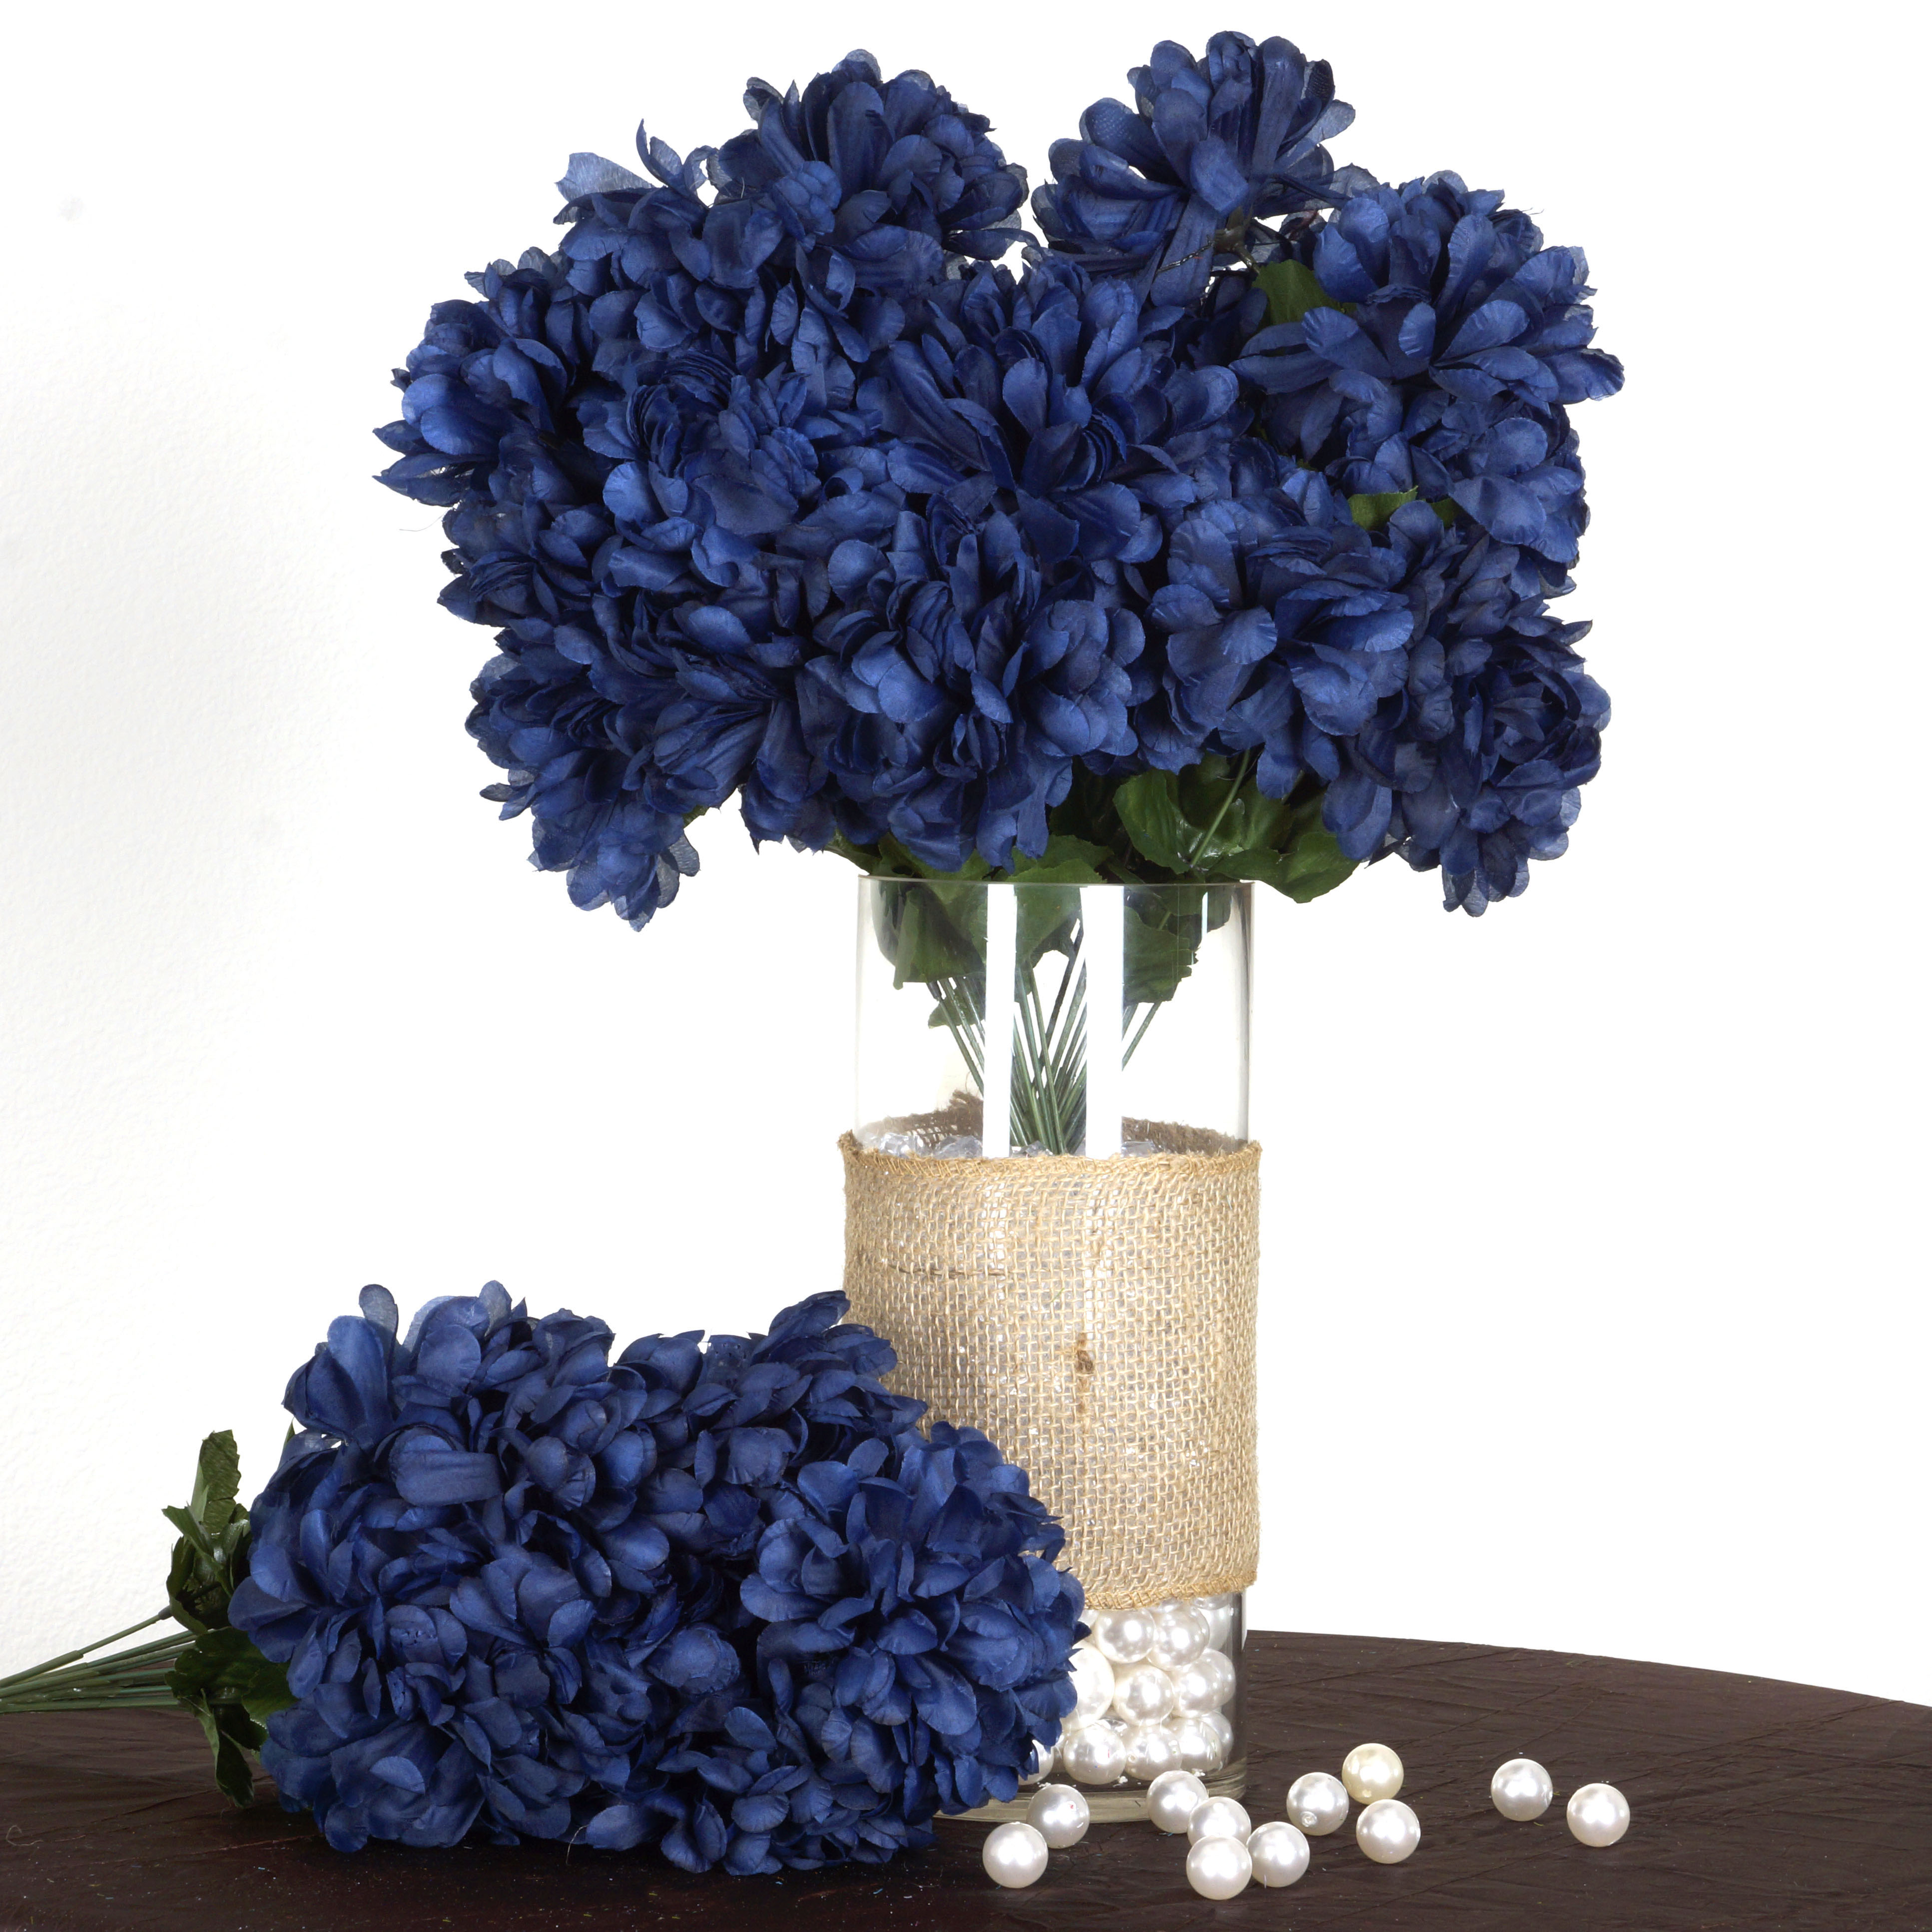 56 Large Chrysanthemum Mums Balls Artificial Wedding Flowers - 4 ...